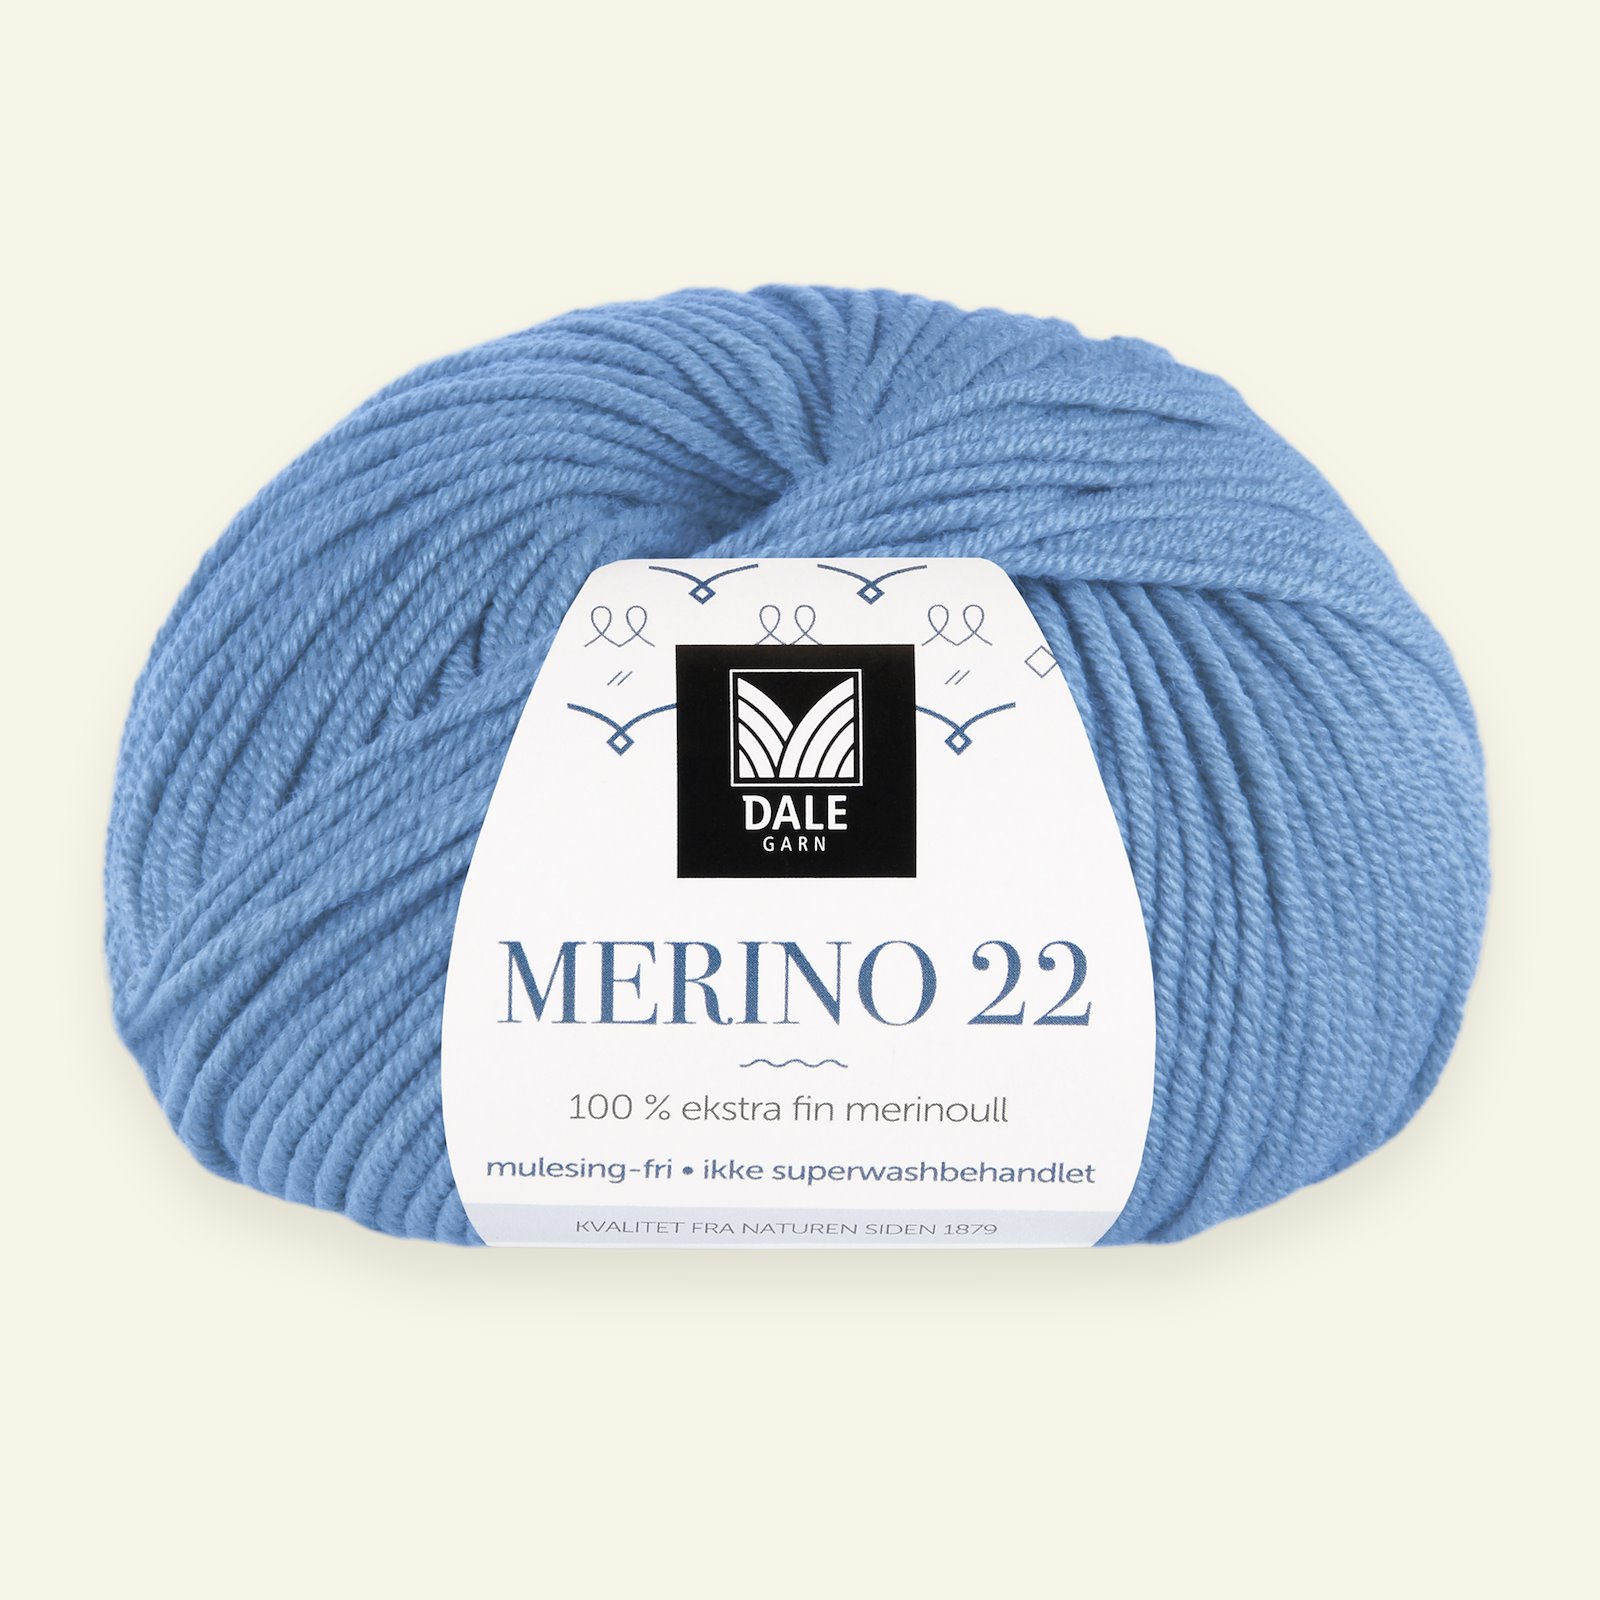 Dale Garn, 100% ekstra fint merinogarn "Merino 22", blå (2028) 90000389_pack